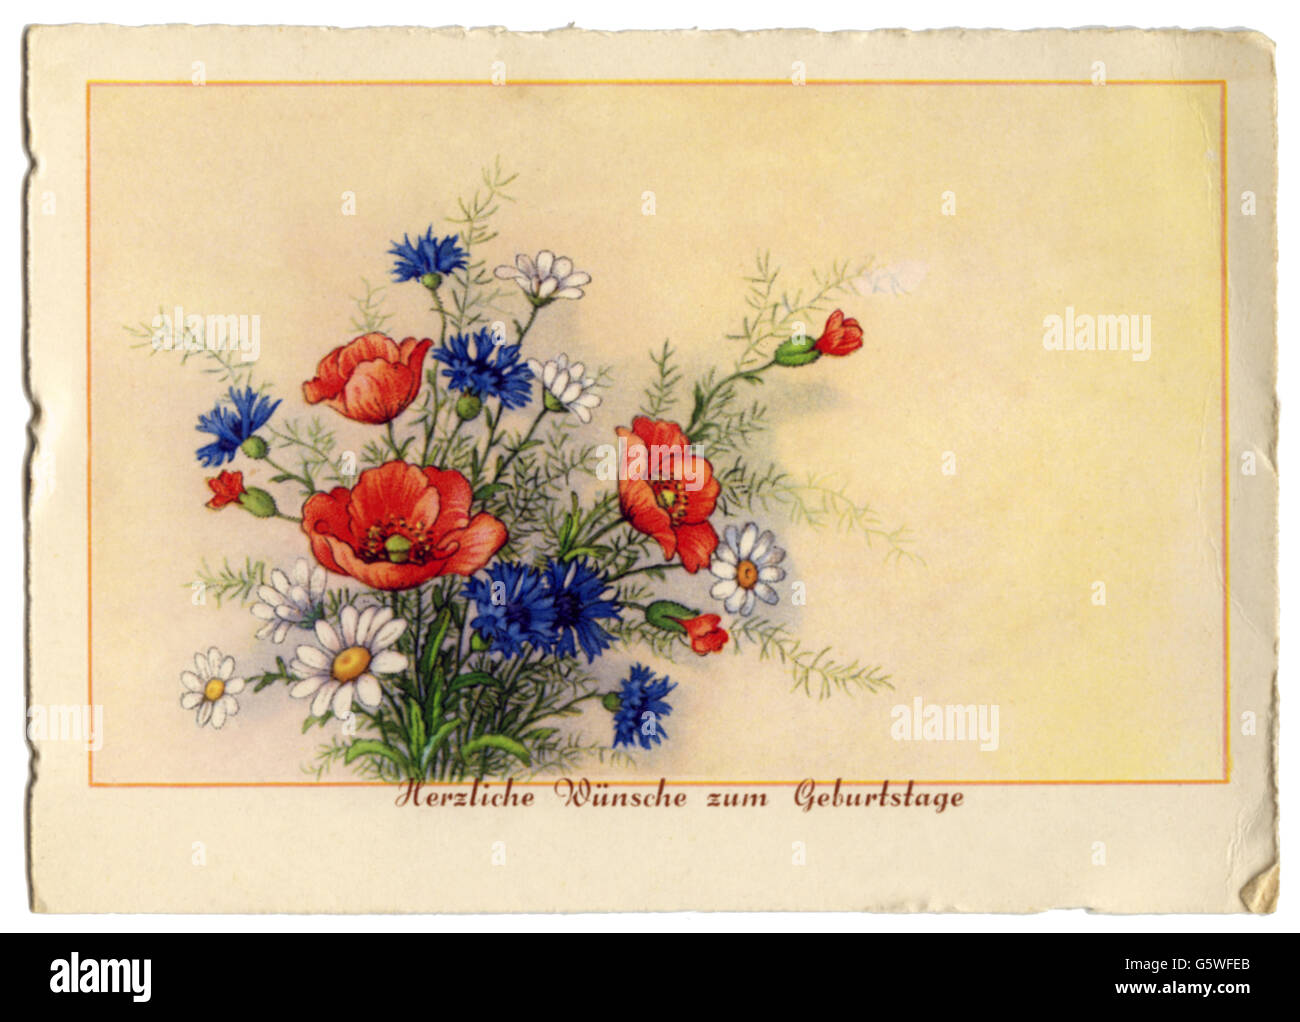 Festivités, carte de voeux anniversaire, 'Herzliche Wünsche zum Geburtstage' (souhaits les plus chaleureux pour votre anniversaire), bouquet de fleurs d'été, carte postale, imprimé: Haering und Co., Allemagne, années 1930, droits-supplémentaires-Clearences-non disponible Banque D'Images